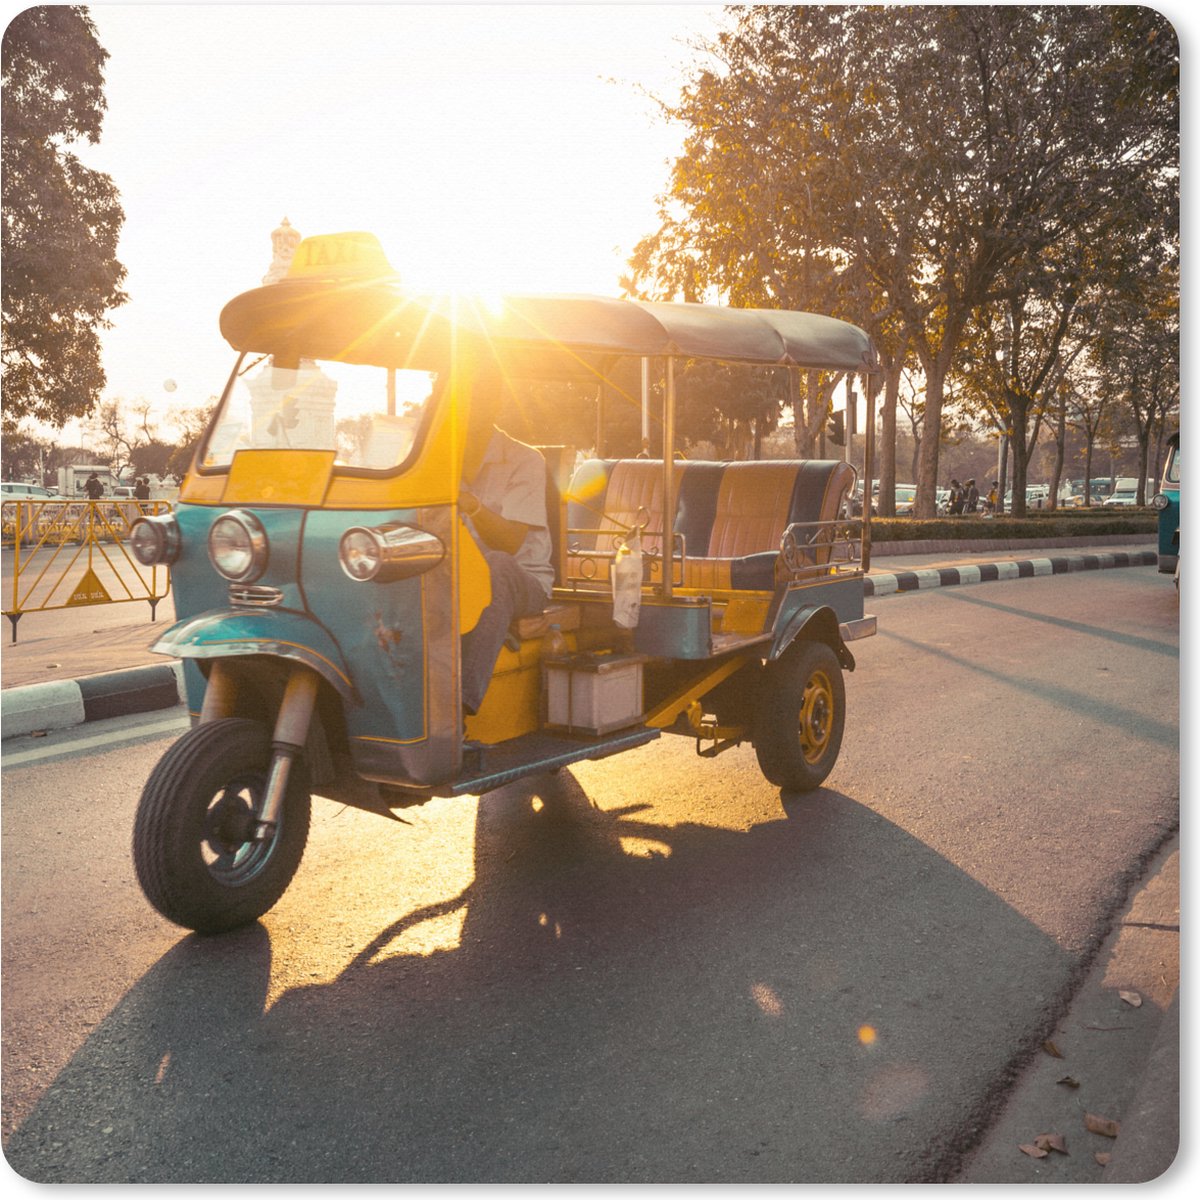 Muismat XXL - Bureau onderlegger - Bureau mat - Tuktuk tijdens zonsondergang - 40x40 cm - XXL muismat